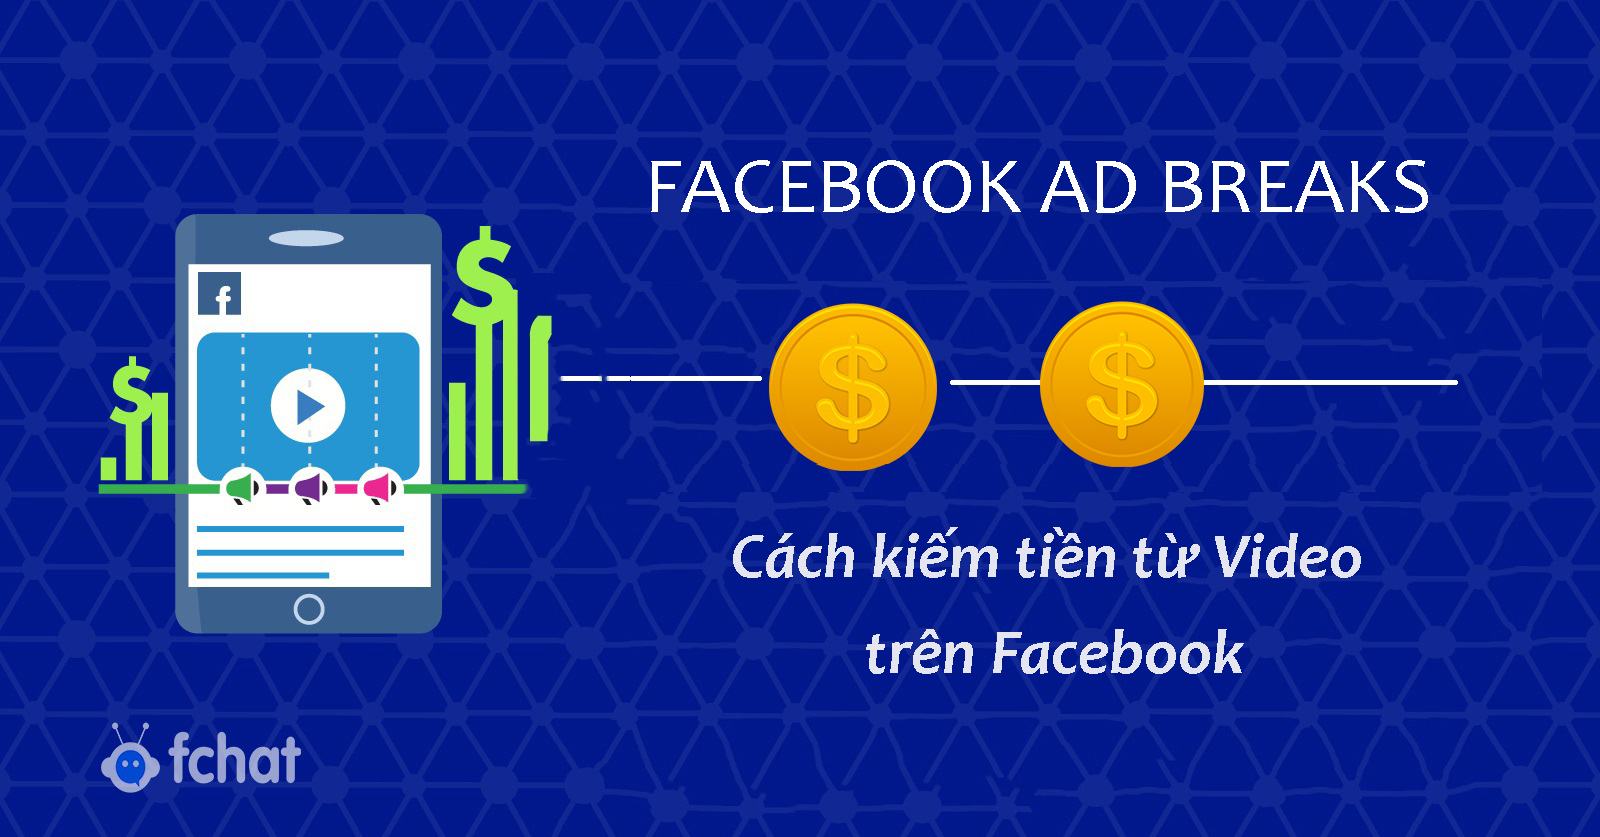 Facebook Ad Breaks là gì? Hướng dẫn kiếm tiền từ video Facebook